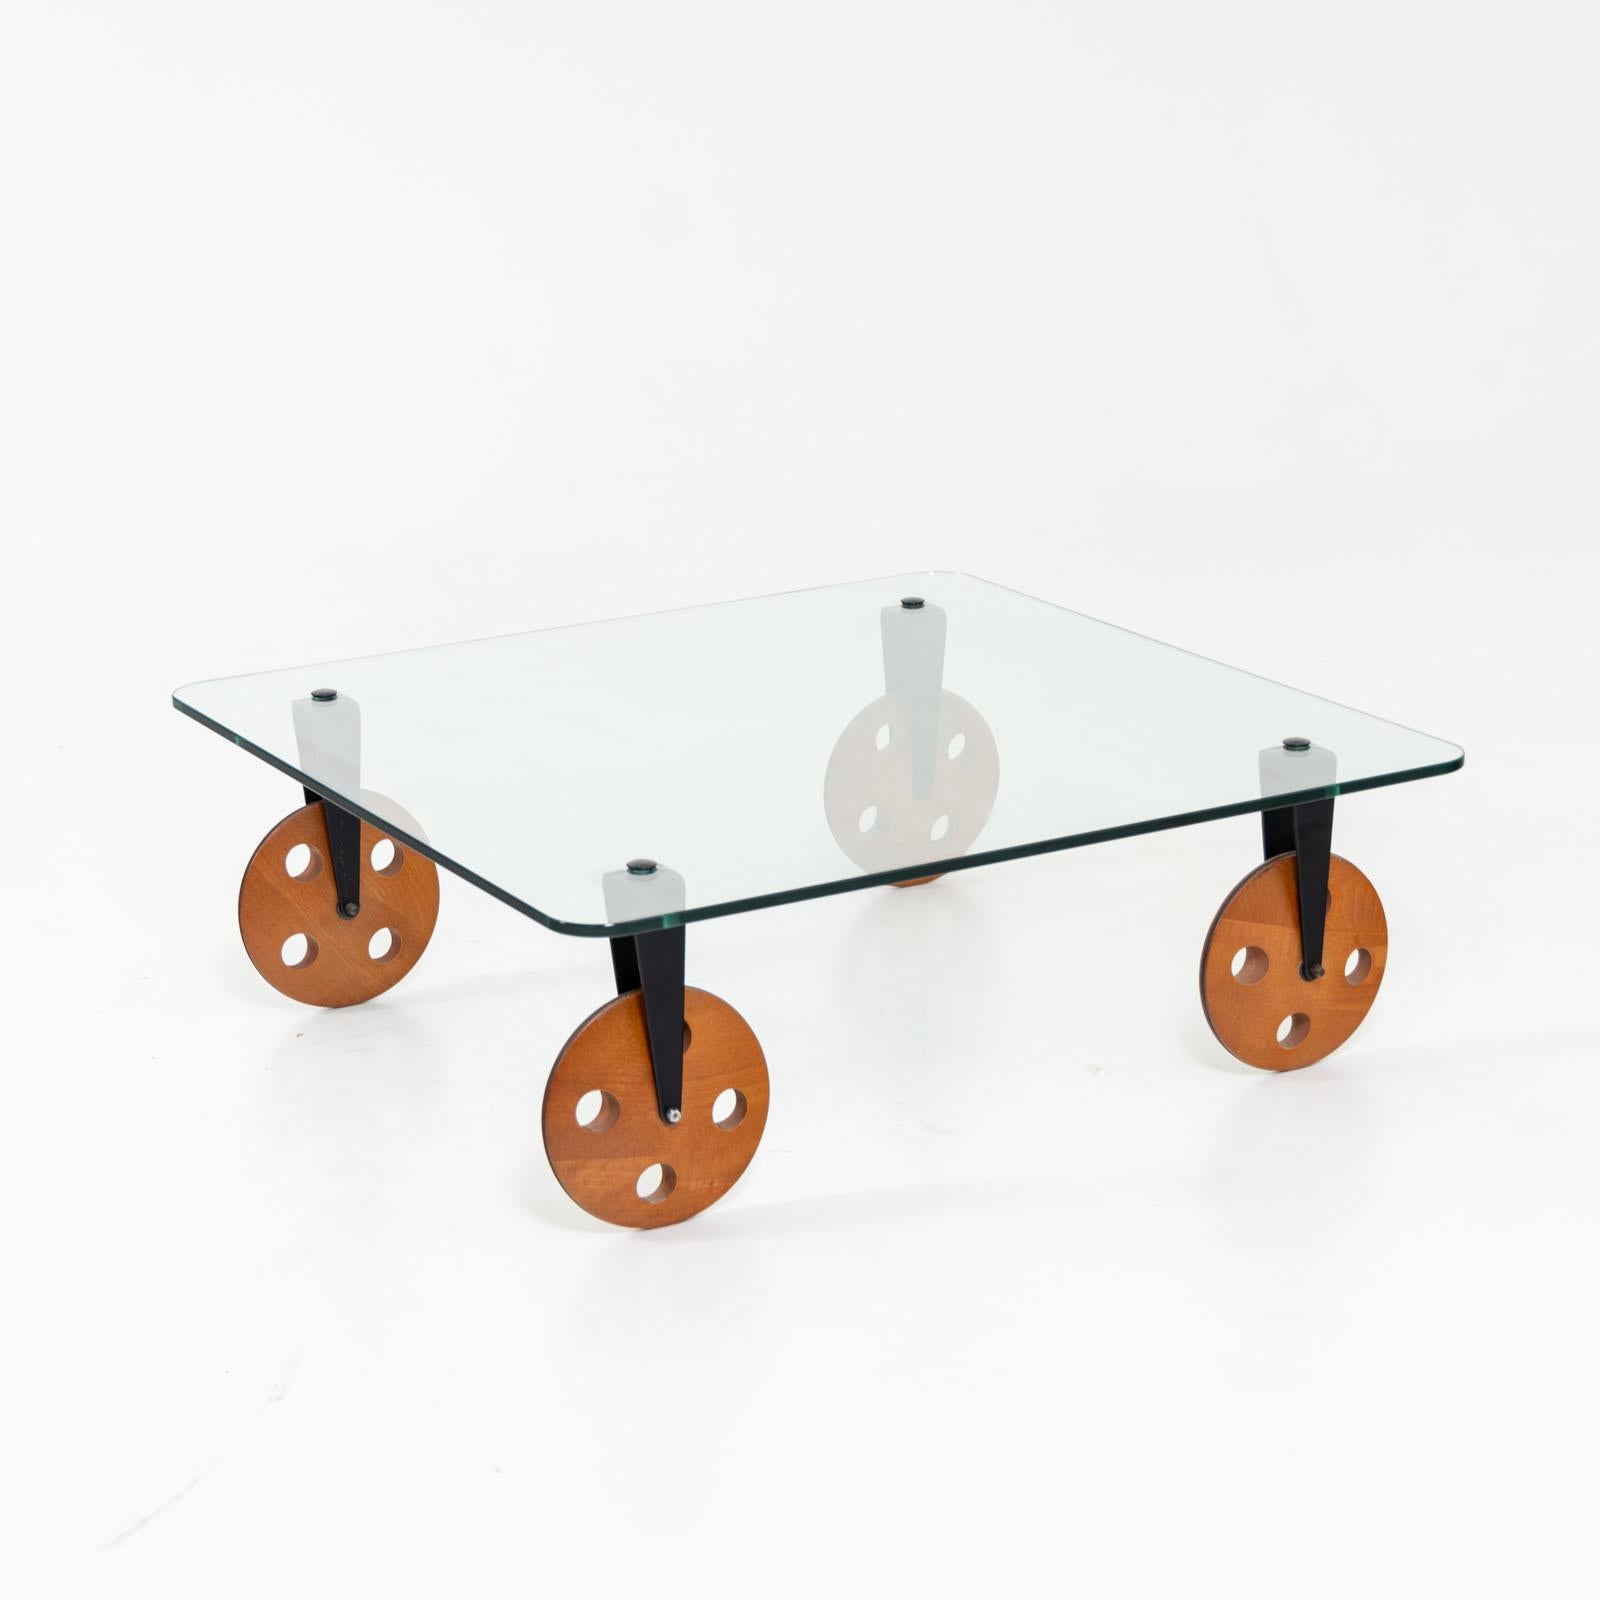 Table basse carrée avec plateau en verre dans le style de Gae Aulenti. La table repose sur des roues en bois qui sont reliées au plateau par des fixations en métal noir.